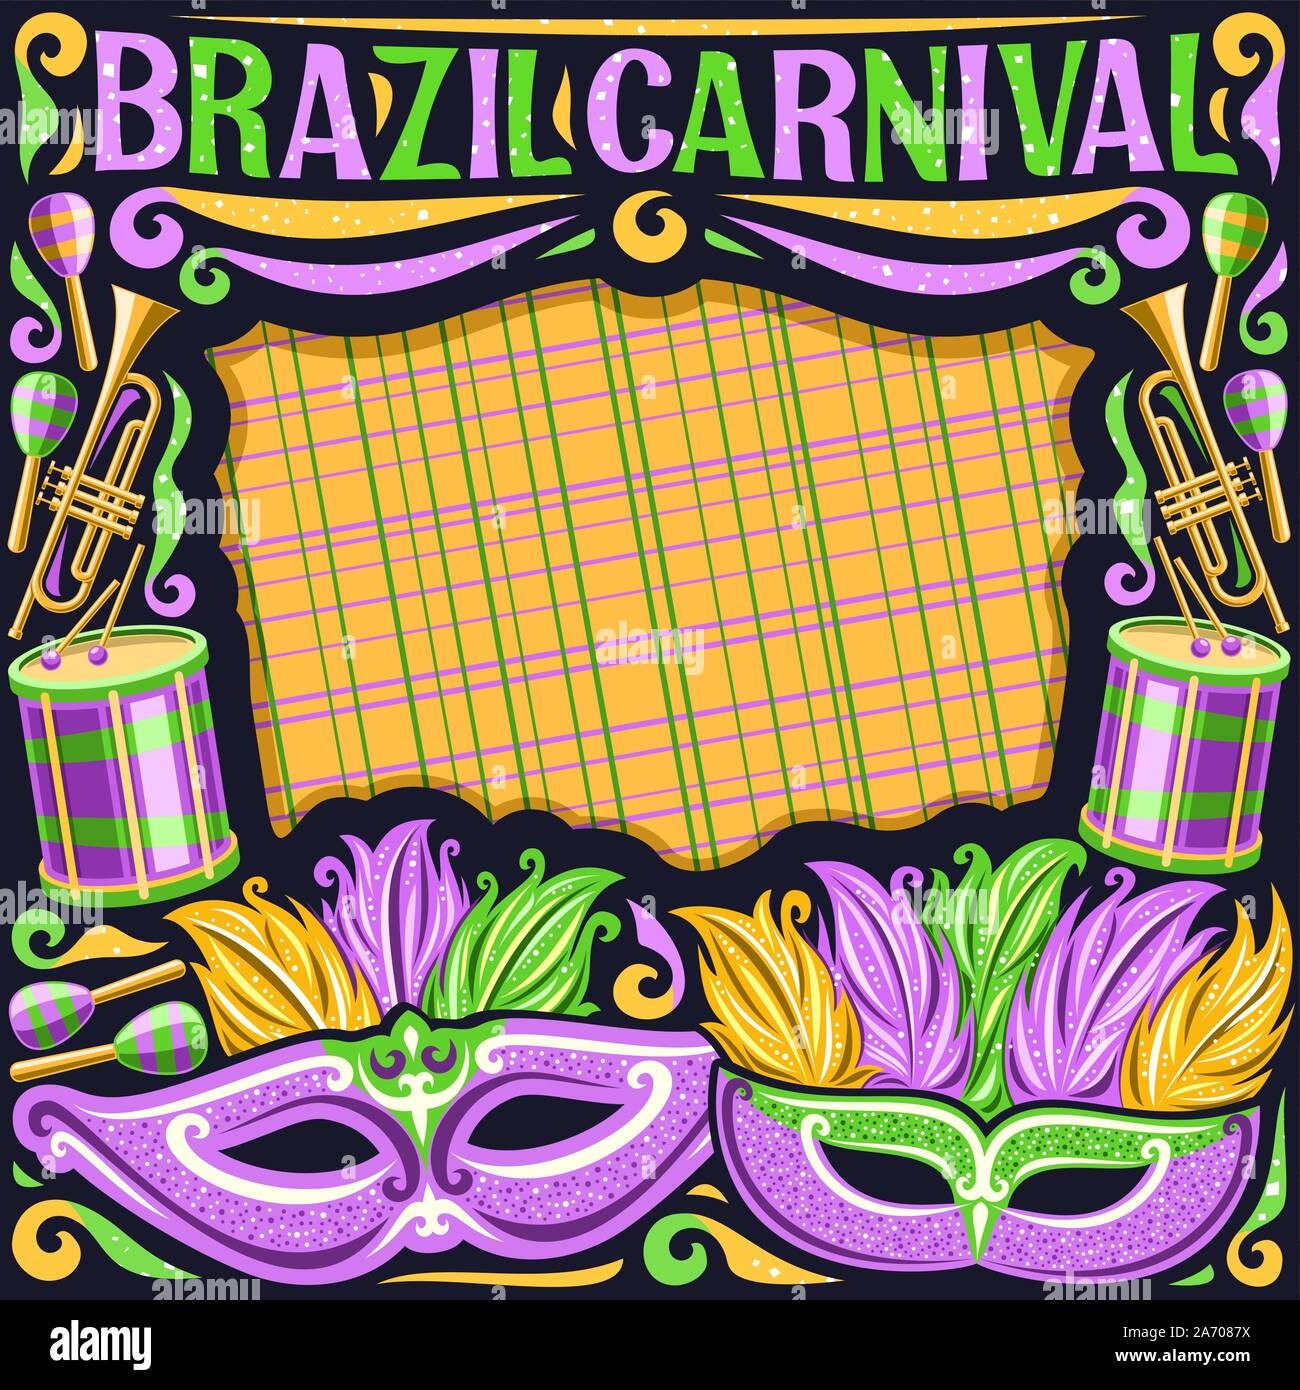 Image de vecteur pour le Brésil Carnaval avec copie espace, illustration de masque de pourpre, de la batterie avec les pilons, mise en page de carnaval à Rio de Janeiro, original Illustration de Vecteur